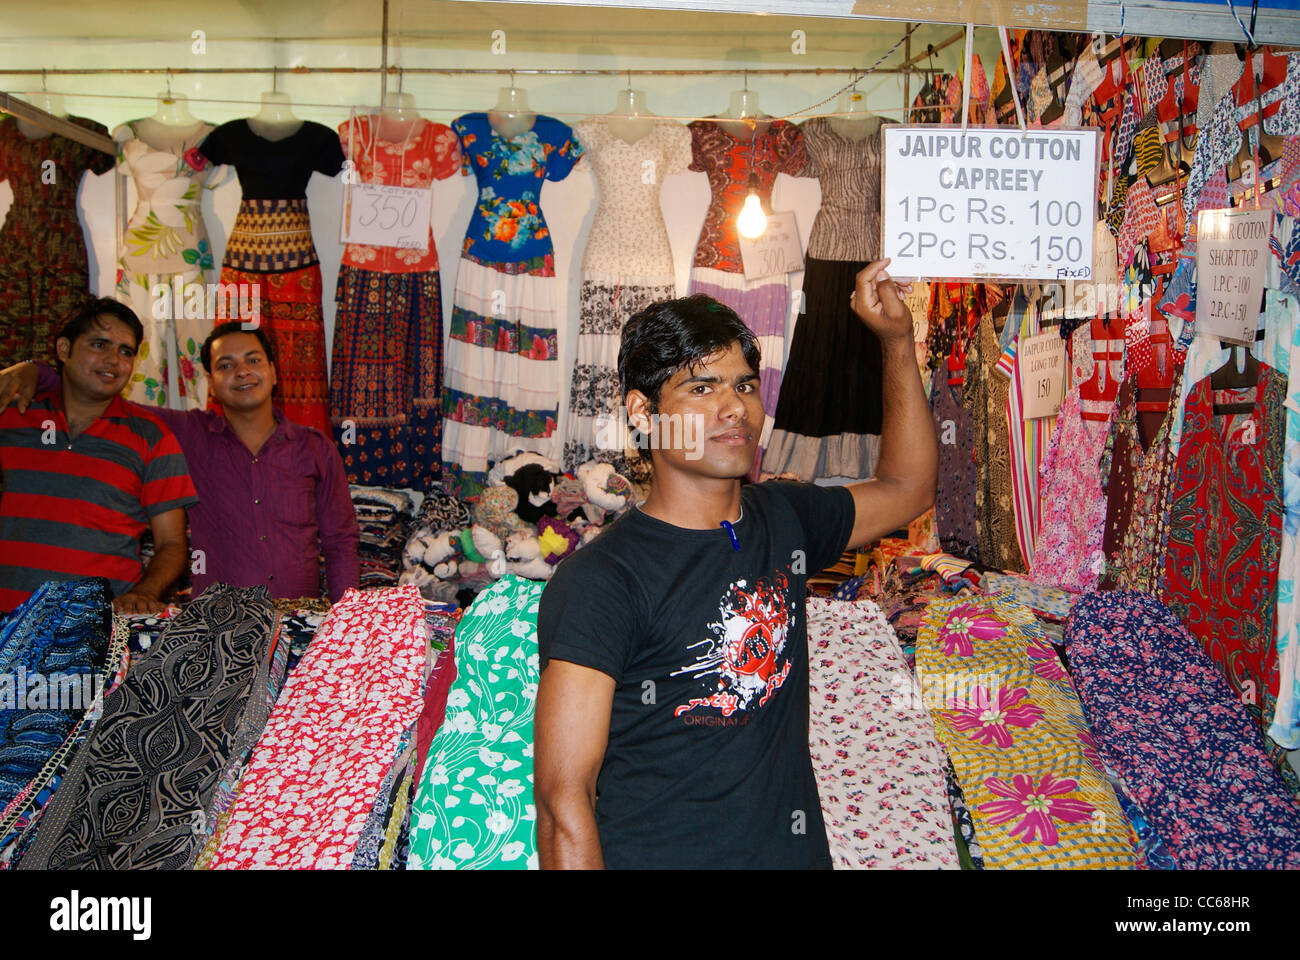 Las ventas man en un paño (tienda de ropa) (tienda exclusiva de la Jaipur capreey algodón ) mostrando muy bajo junta Fotografía de stock - Alamy